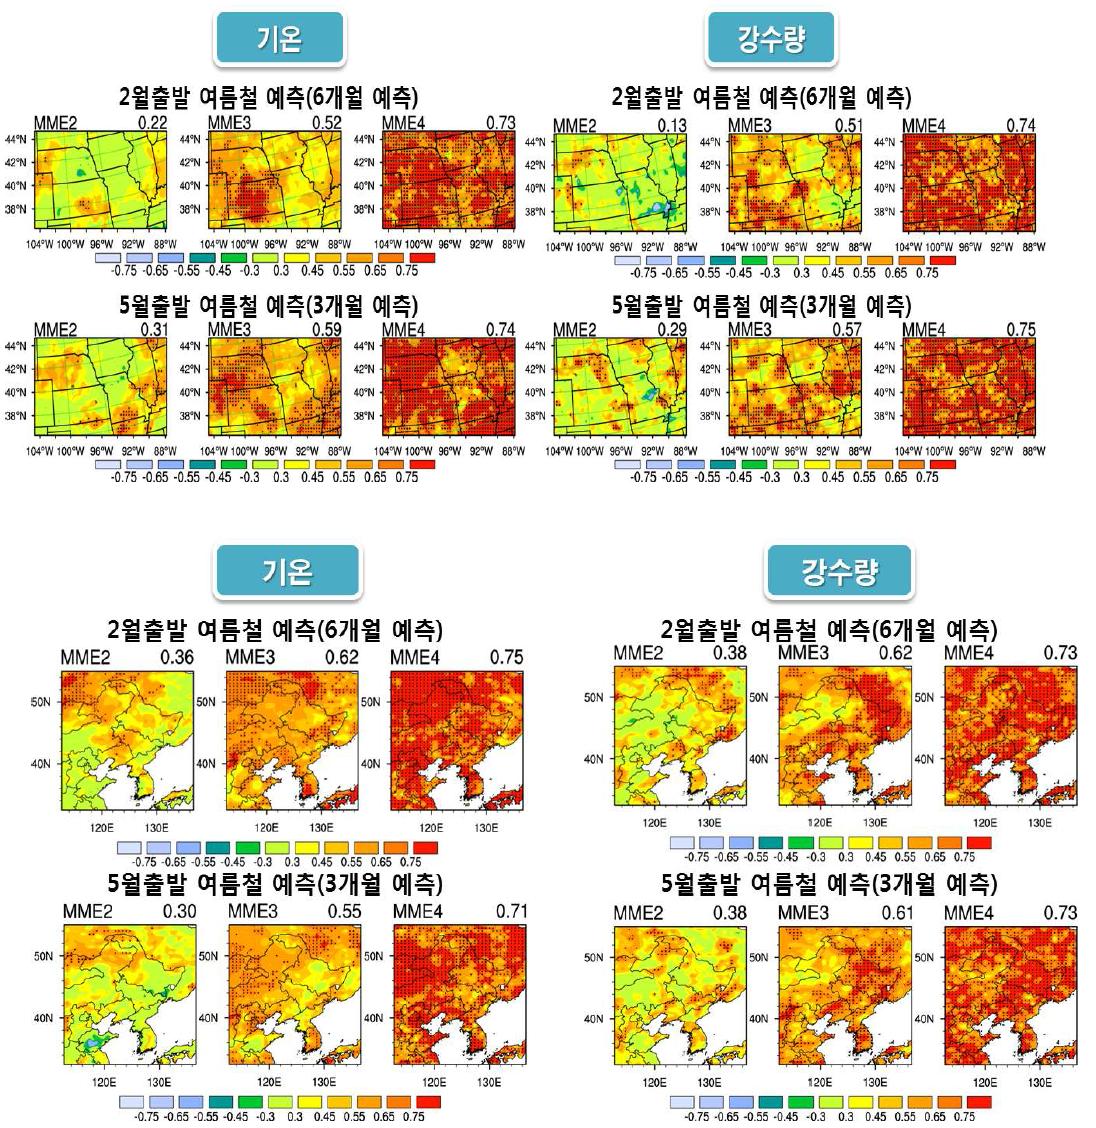 통계적 규모축소를 이용한 여름철(6, 3개월) 예측에 대한 미국지역(상)과 중국지역(하)의 기온 및 강수량의 상관관계